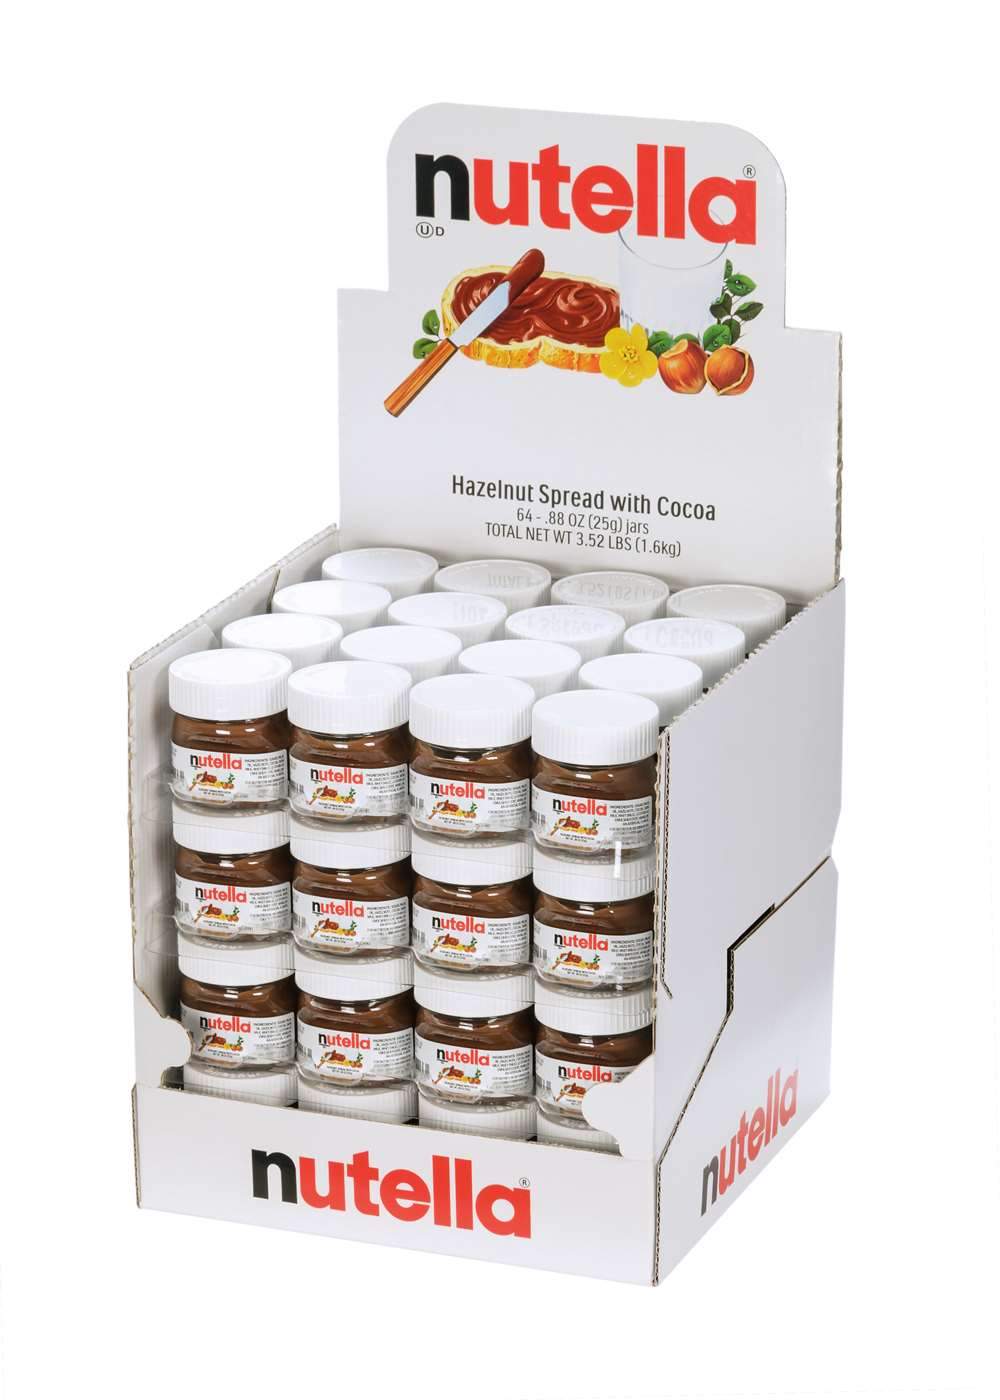 Nutella Hazelnut Spread with Cocoa Nutella 0.88 Oz-64 Count 